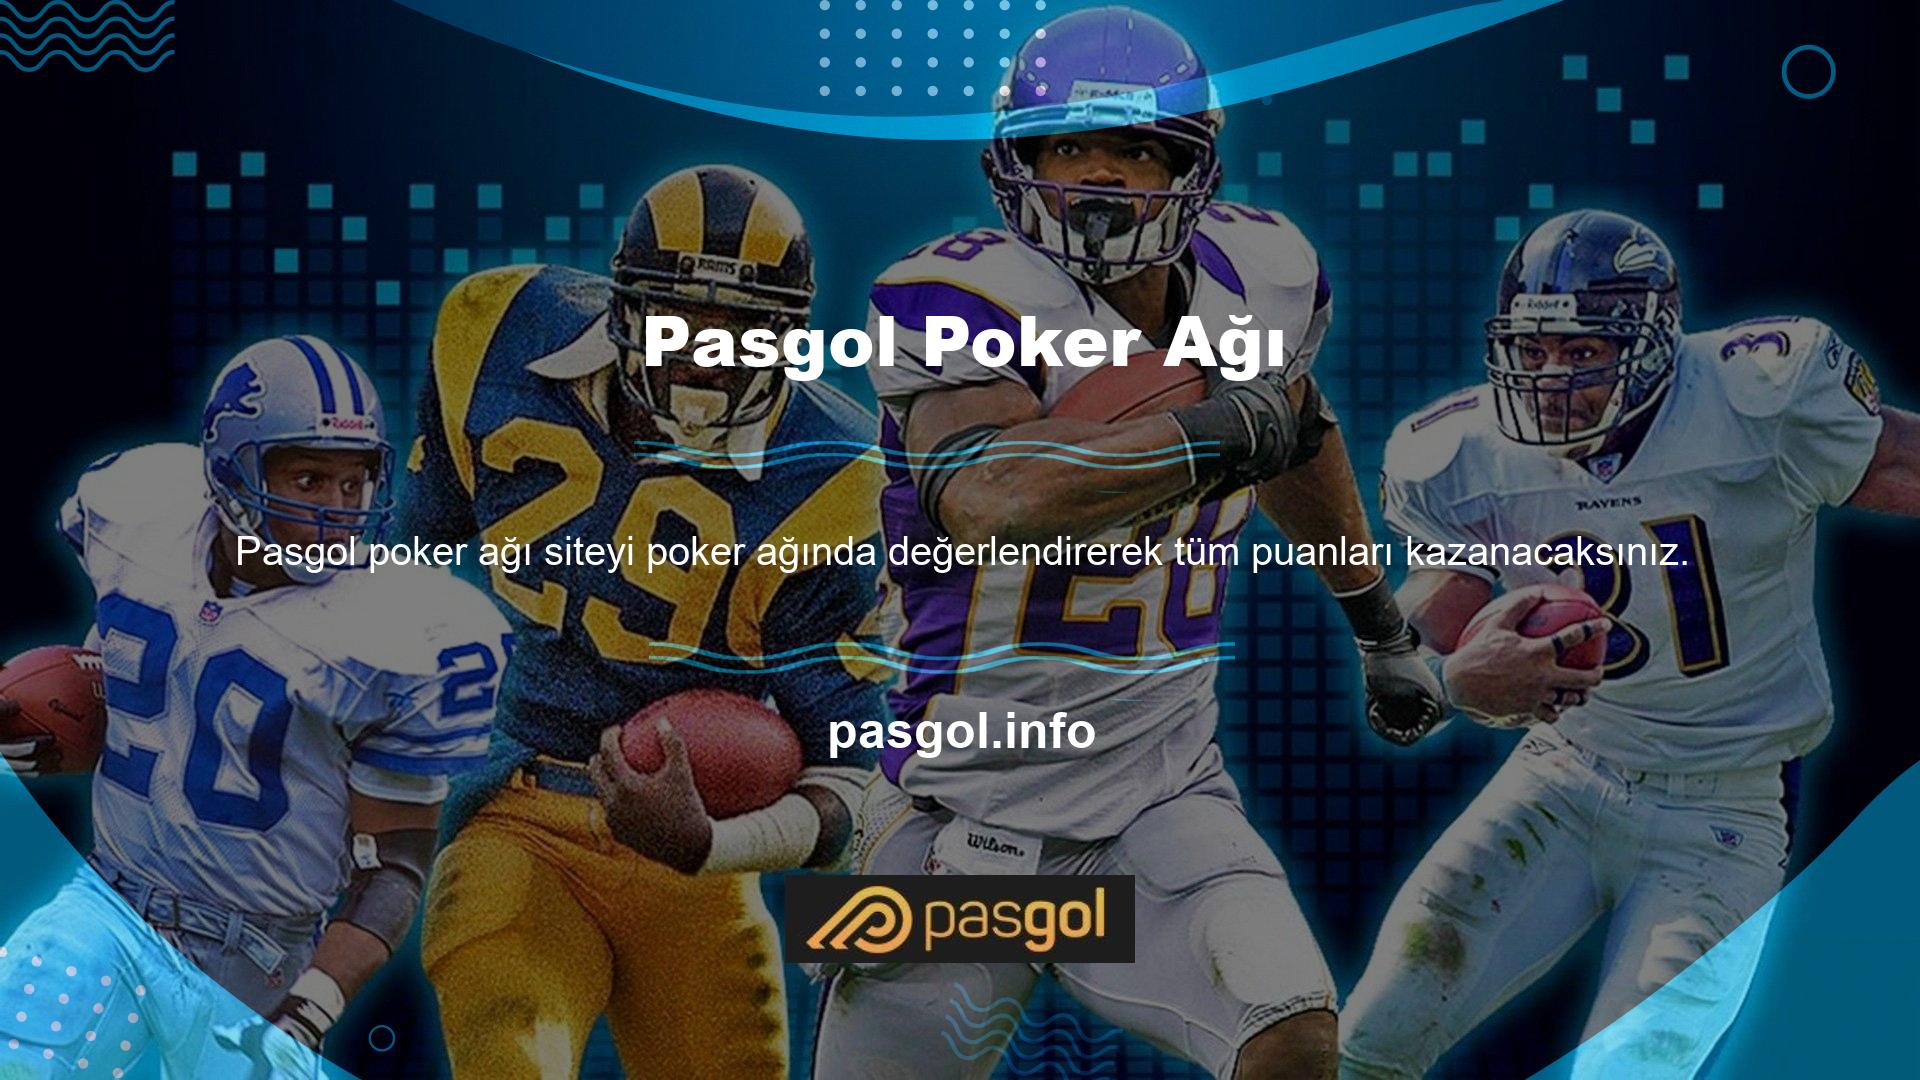 Pasgol canlı casino poker oyunları Ultimate Texas Hold’em, Texas Hold’em ve 3-Card Pokerden oluşmaktadır